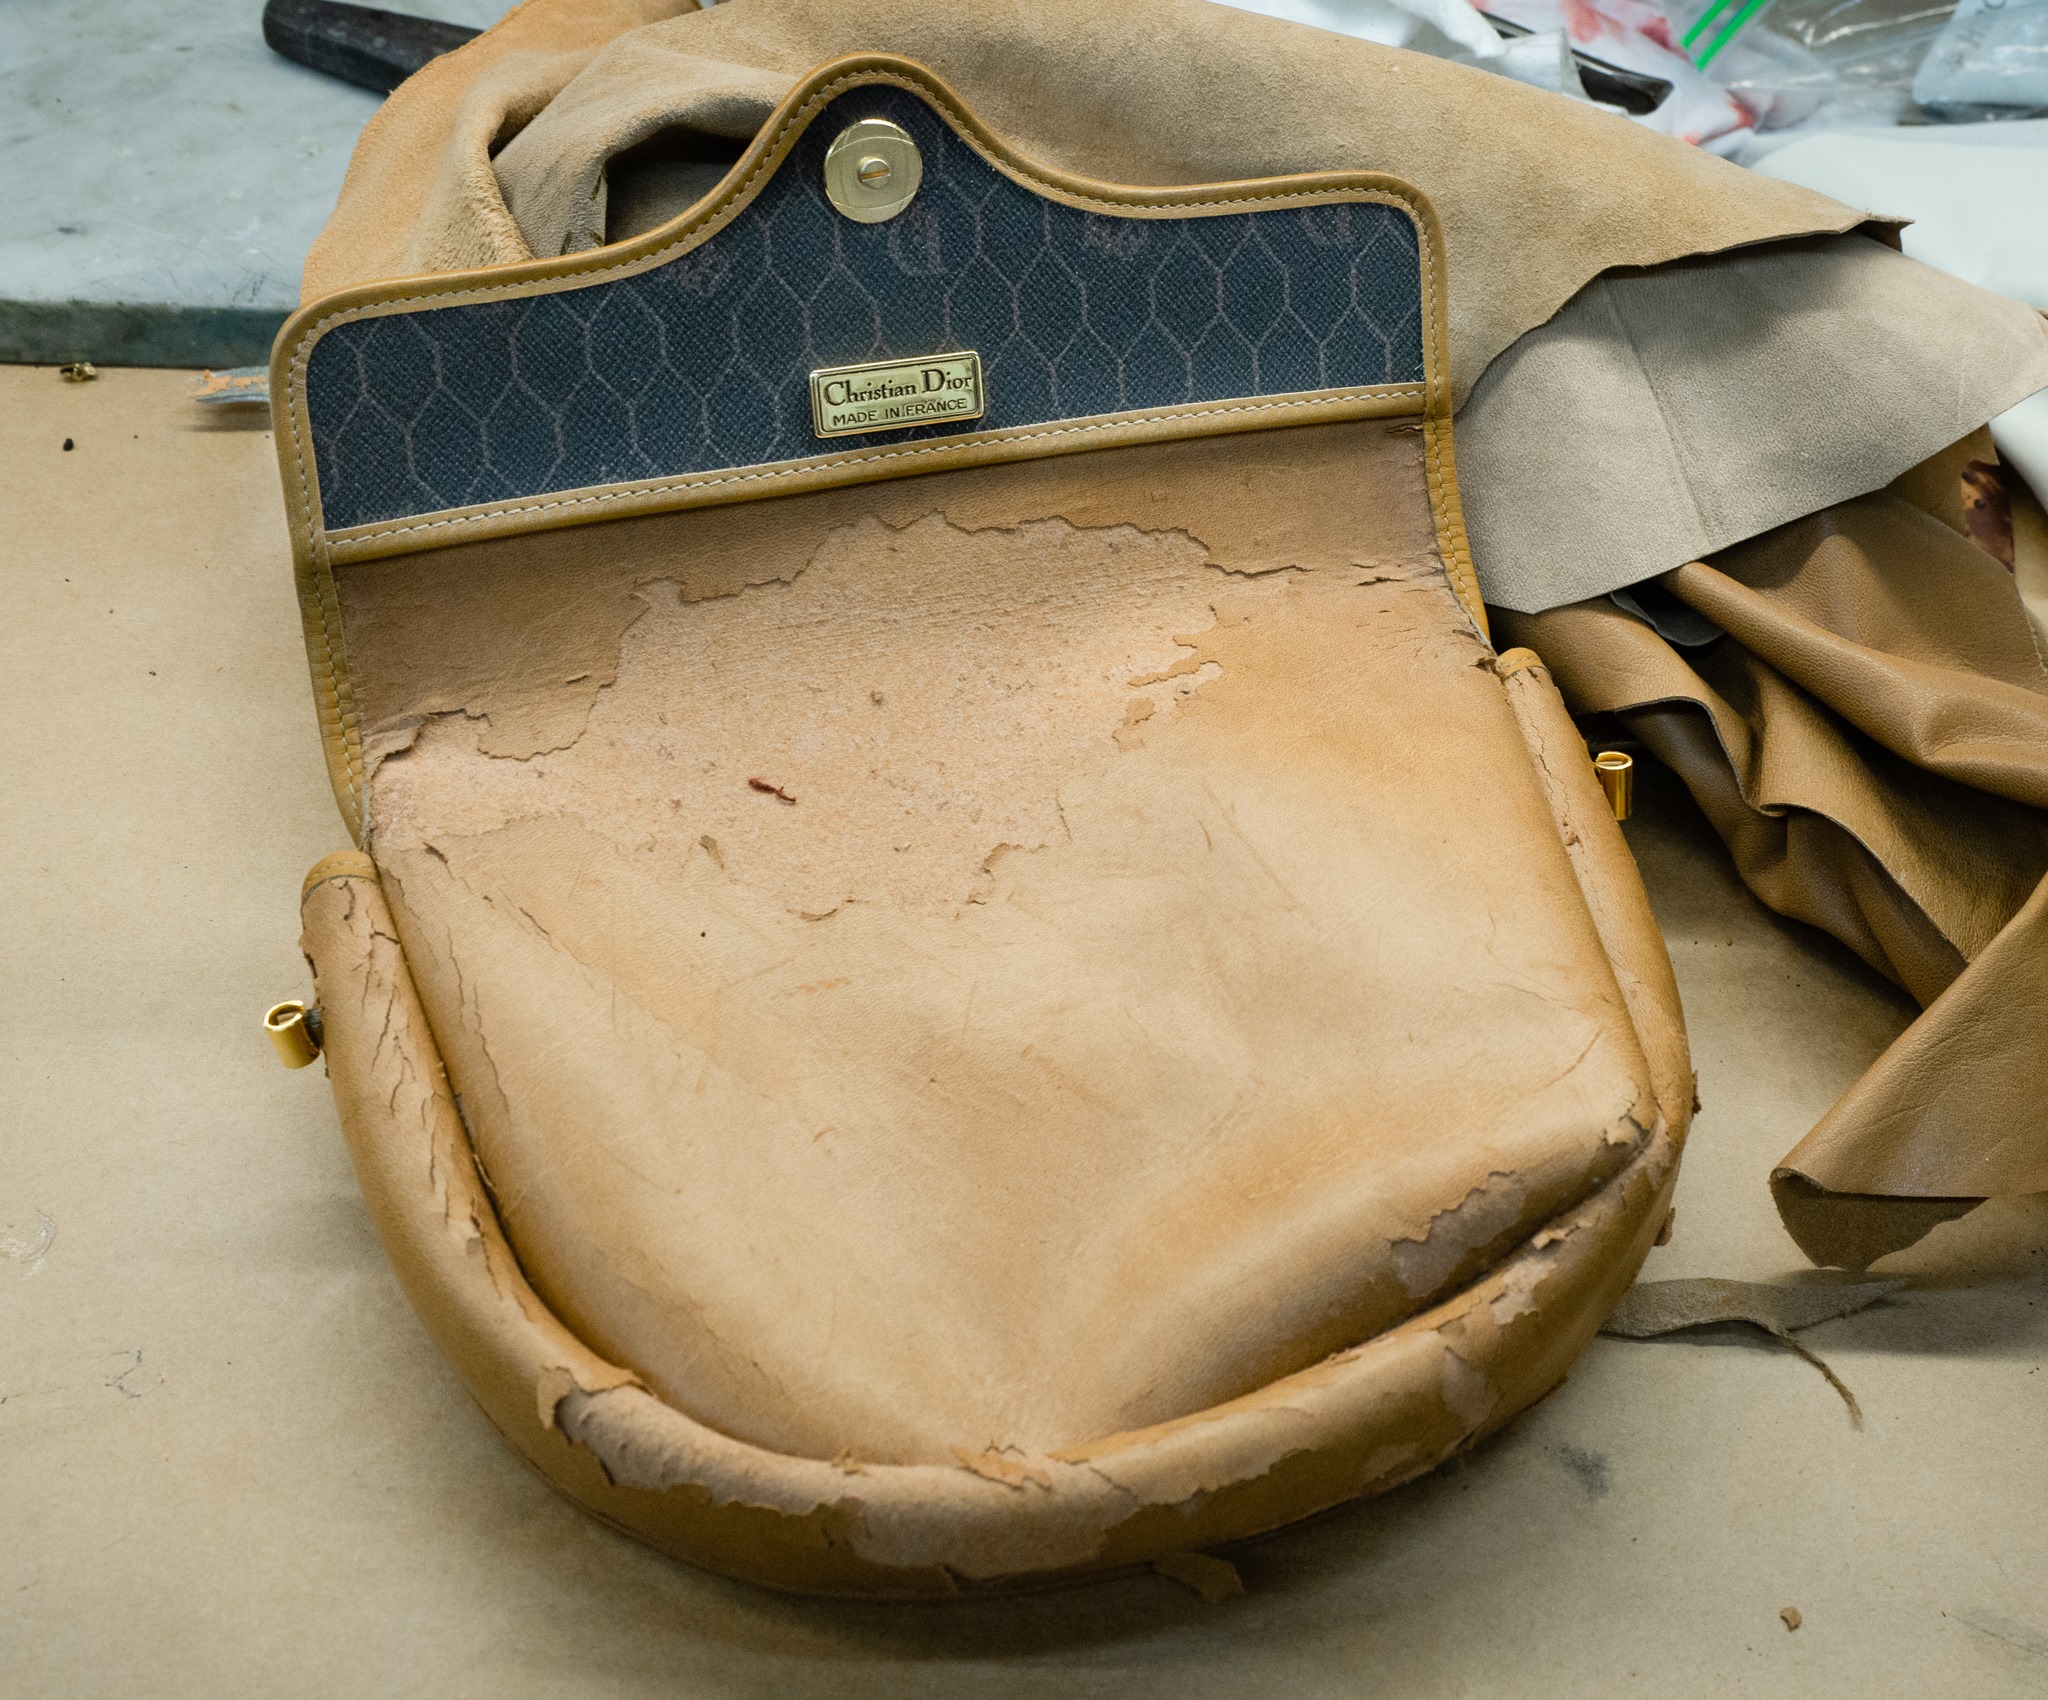 Evans - Designer Bag Repairs Australia, Luxury Cleaning & Restoration